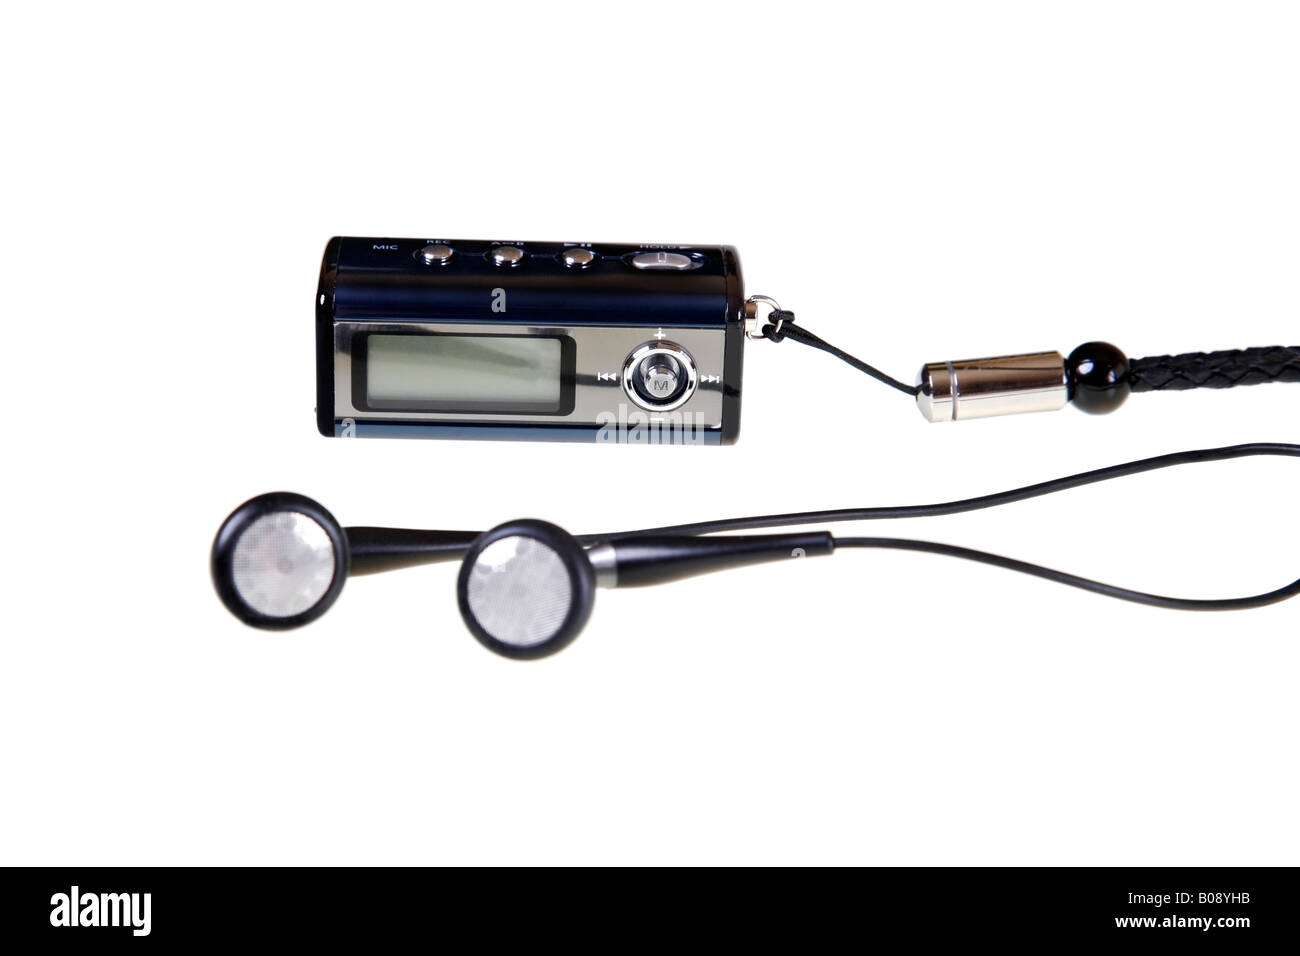 Le lecteur MP3, WALKMAN® avec écouteurs écouteurs () et une courroie de transport, décoration Banque D'Images